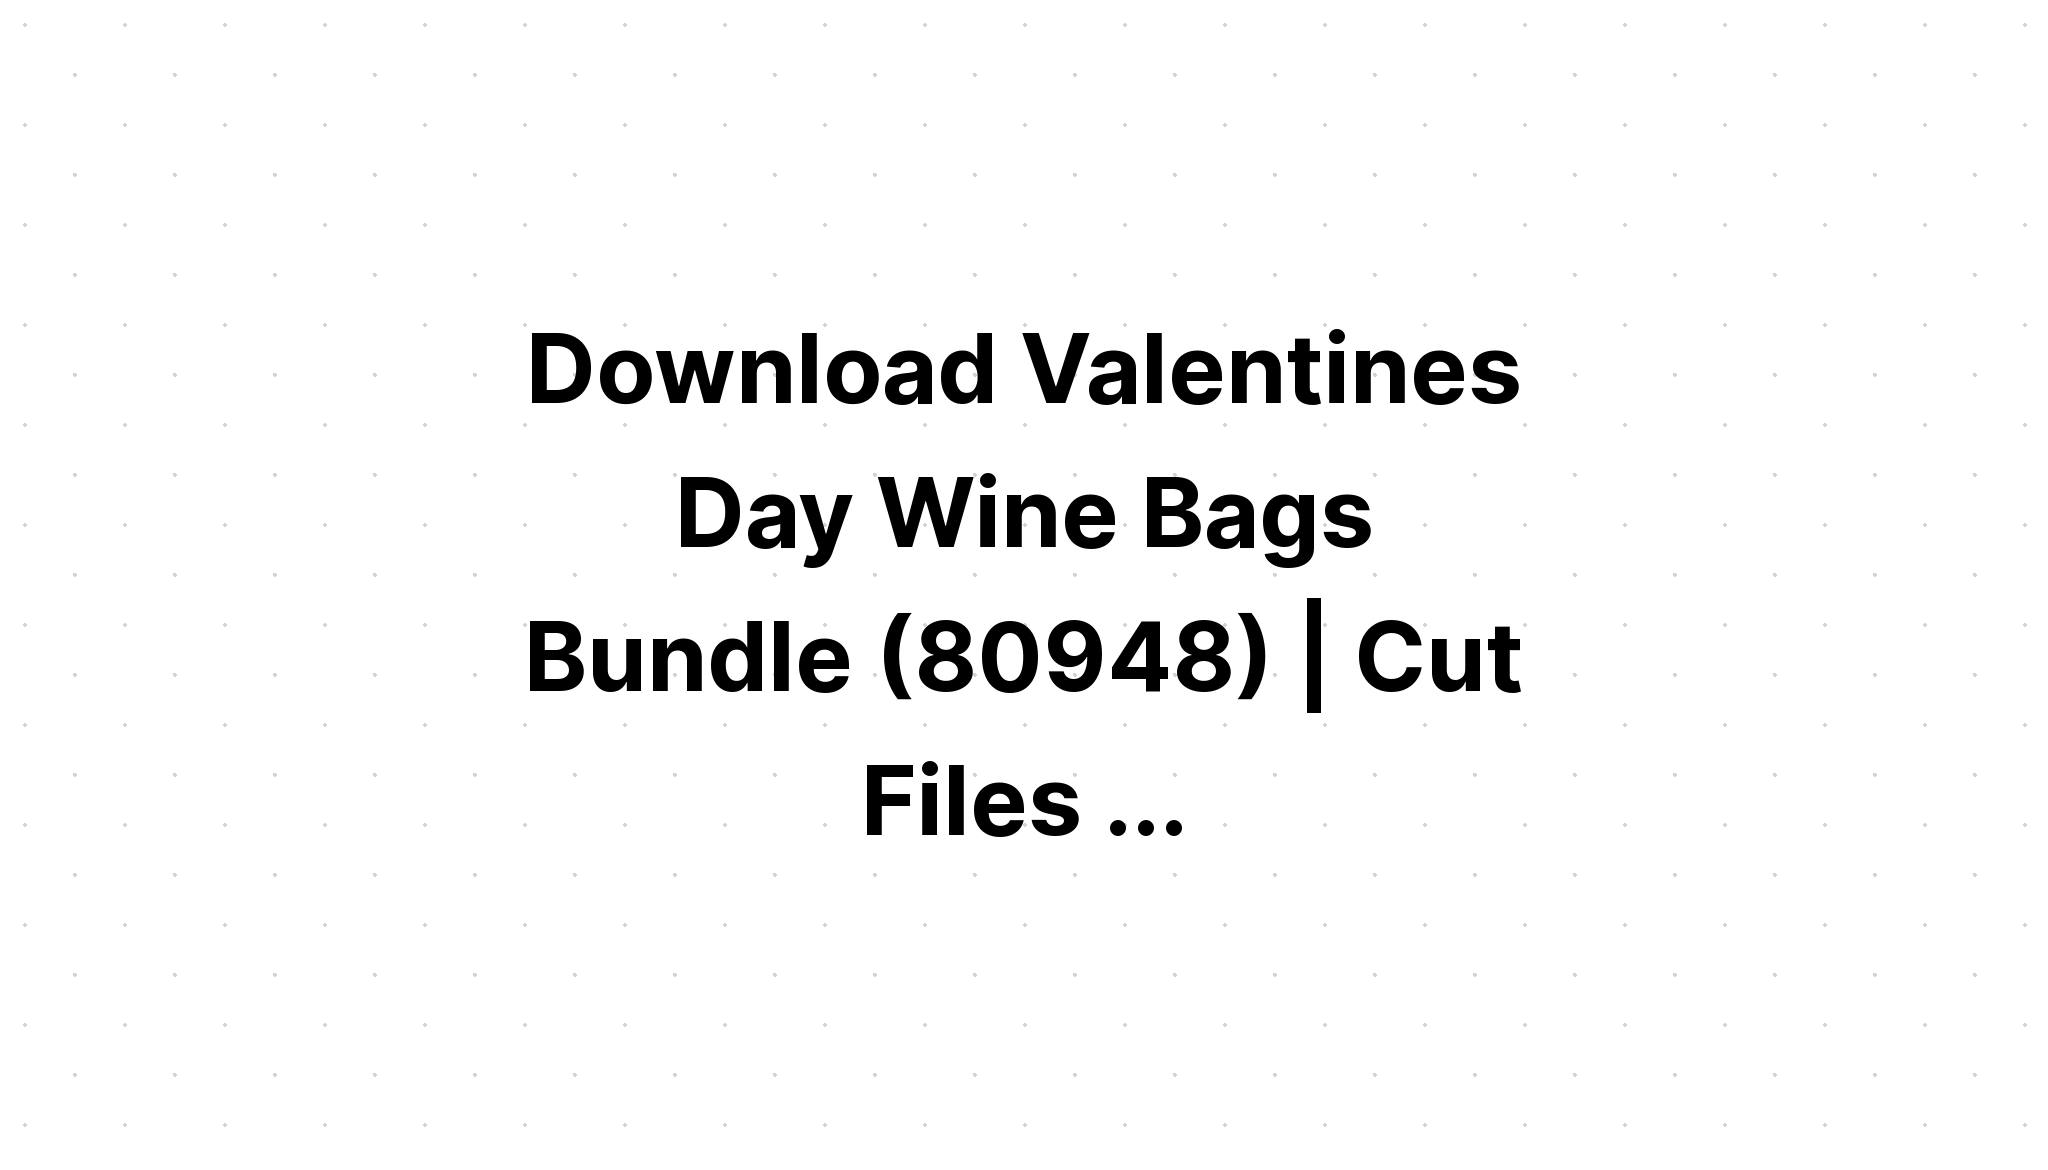 Download Valentine?S Day Bundle 20 Designs SVG File